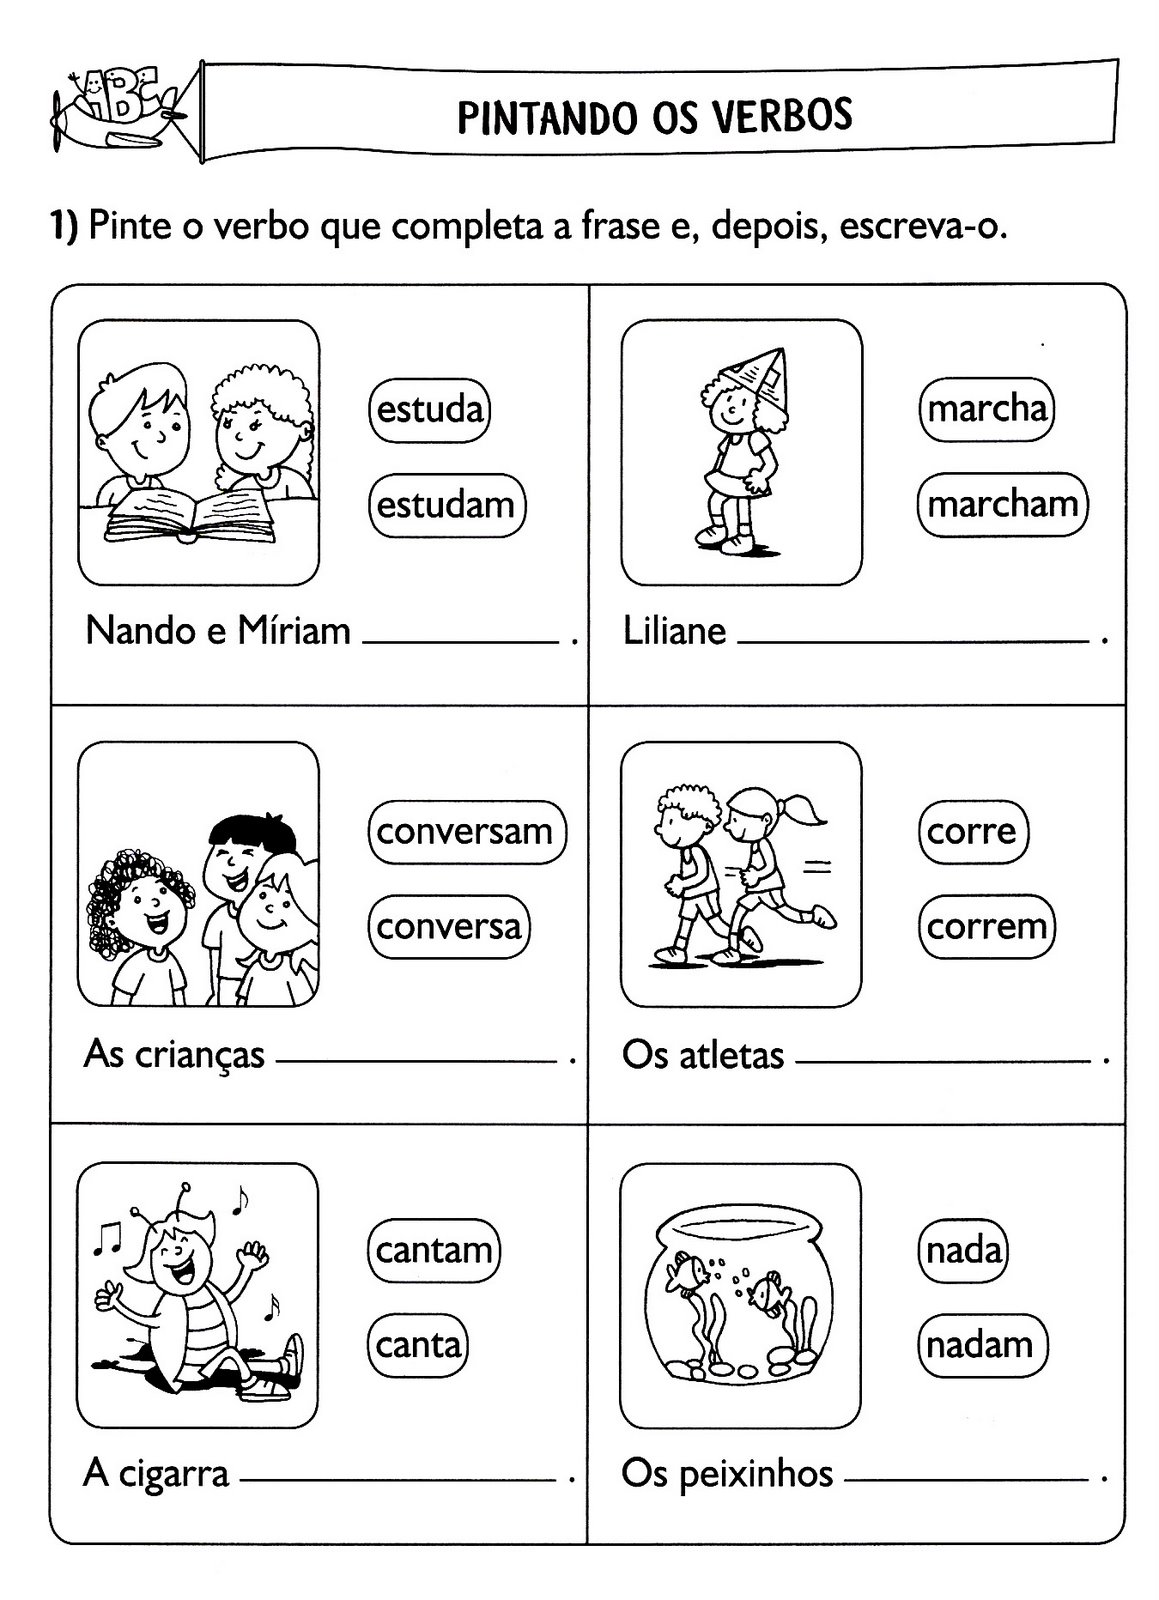 www.ensinar-aprender.blogspot.comidentifique os verbos de acordo com as cenas